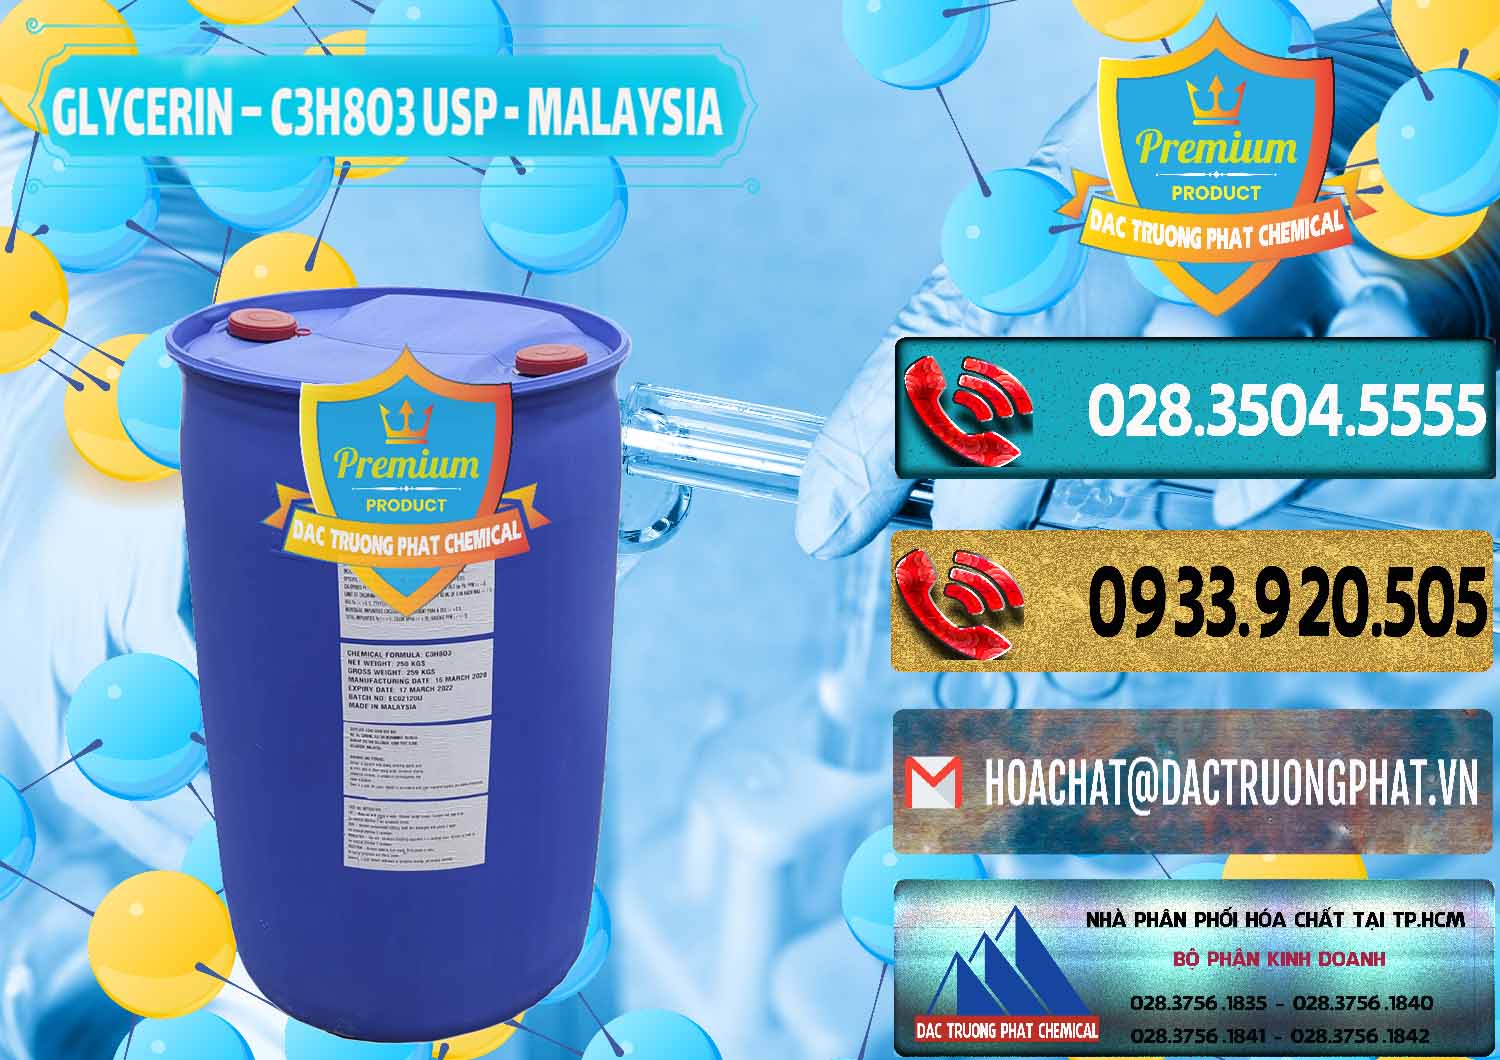 Công ty bán và cung cấp Glycerin – C3H8O3 USP Malaysia - 0233 - Đơn vị nhập khẩu ( cung cấp ) hóa chất tại TP.HCM - hoachatdetnhuom.com